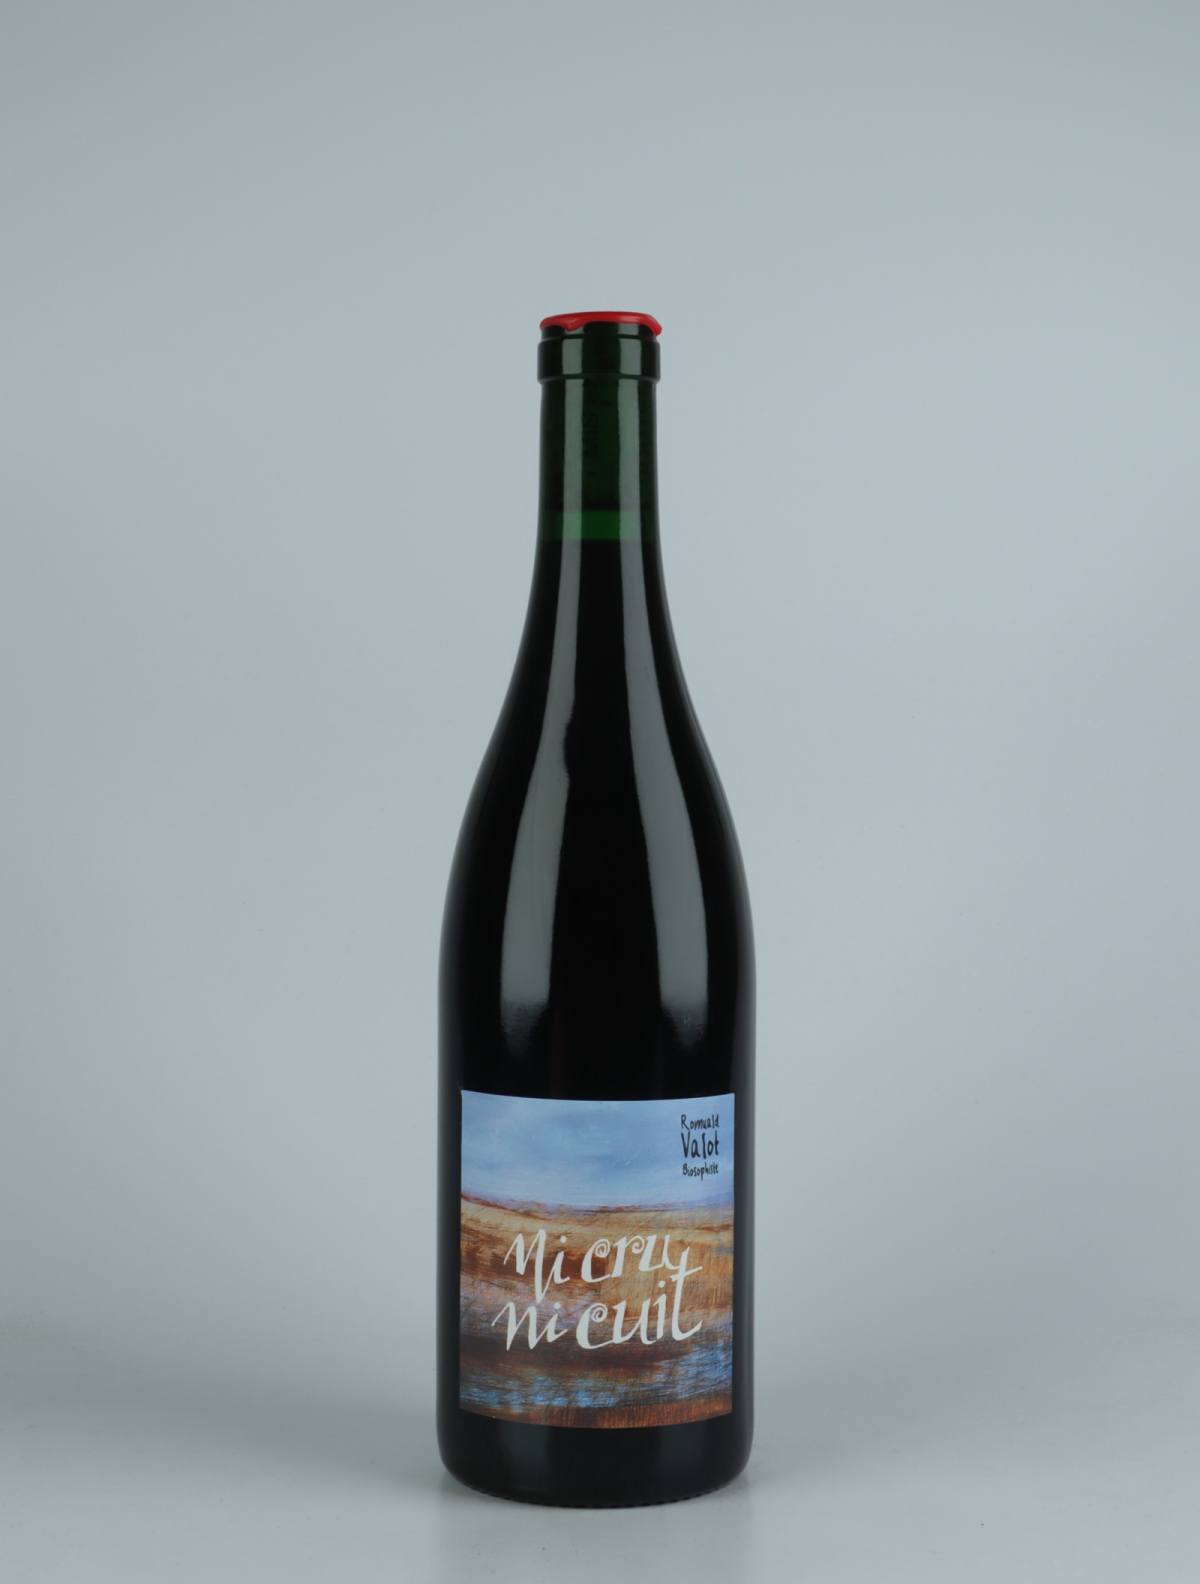 En flaske 2021 Ni Cru ni Cuit Rødvin fra Romuald Valot, Beaujolais i Frankrig